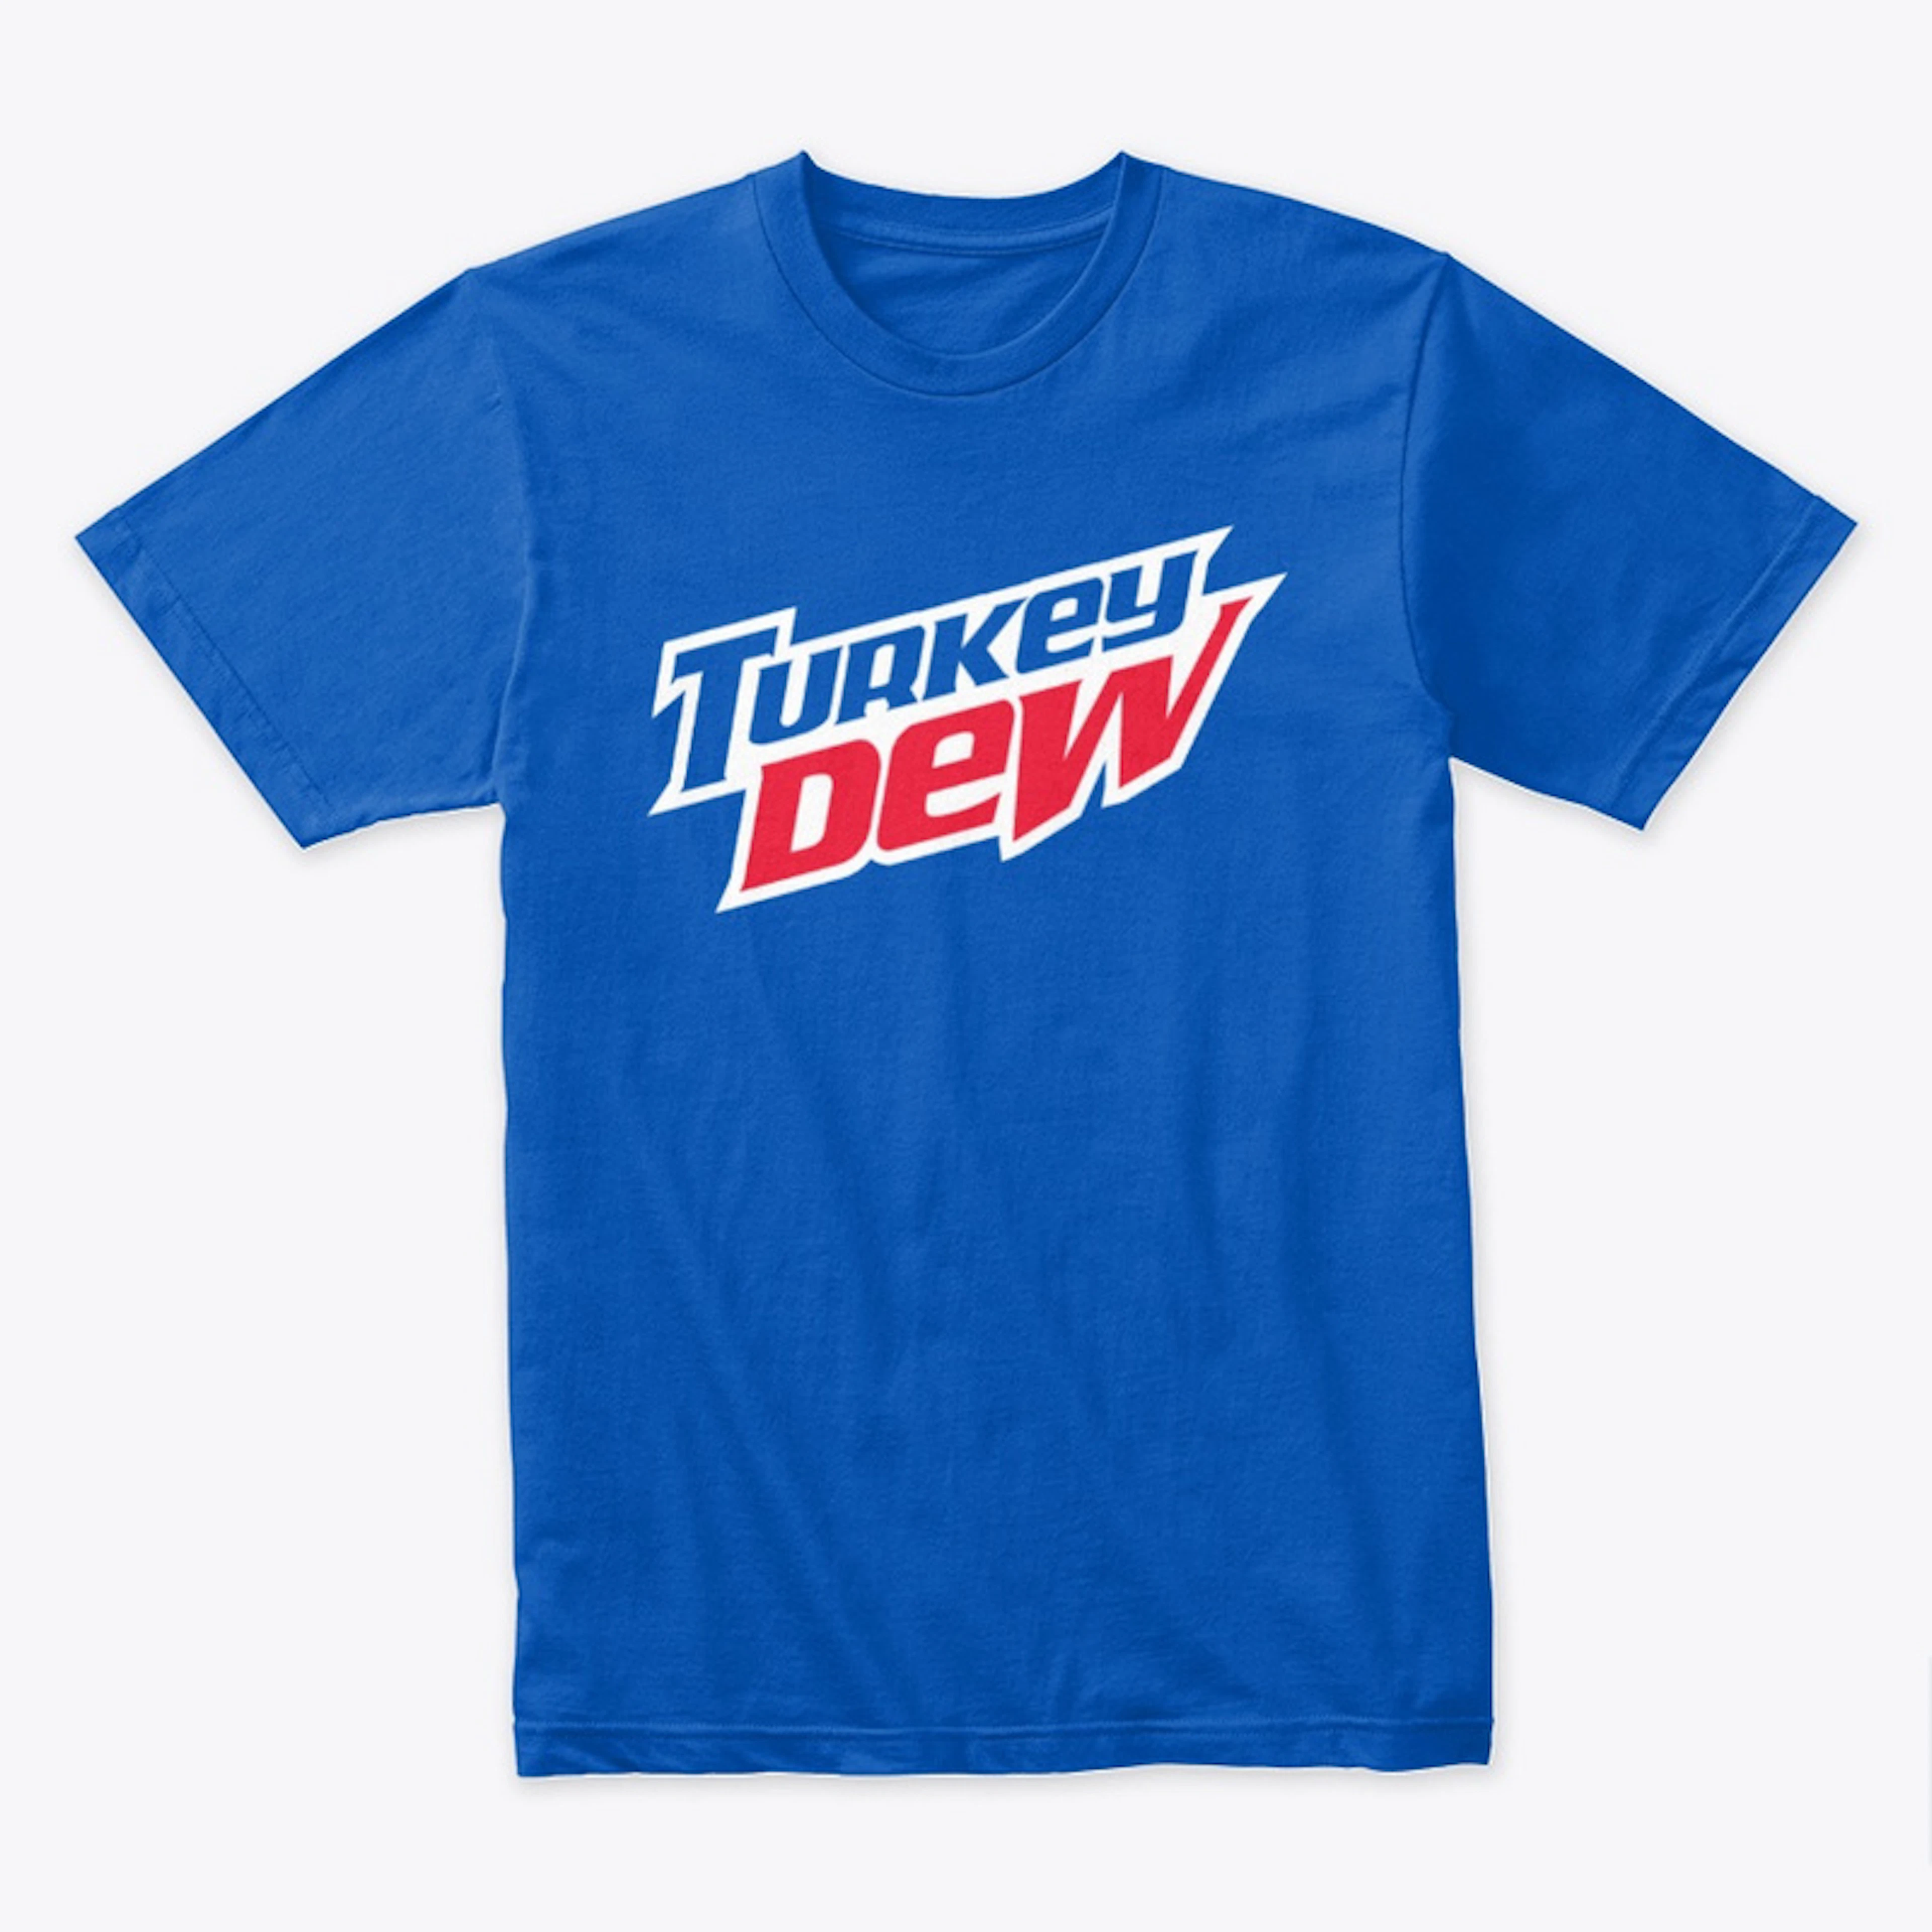 Turkey Dew 2-Color T